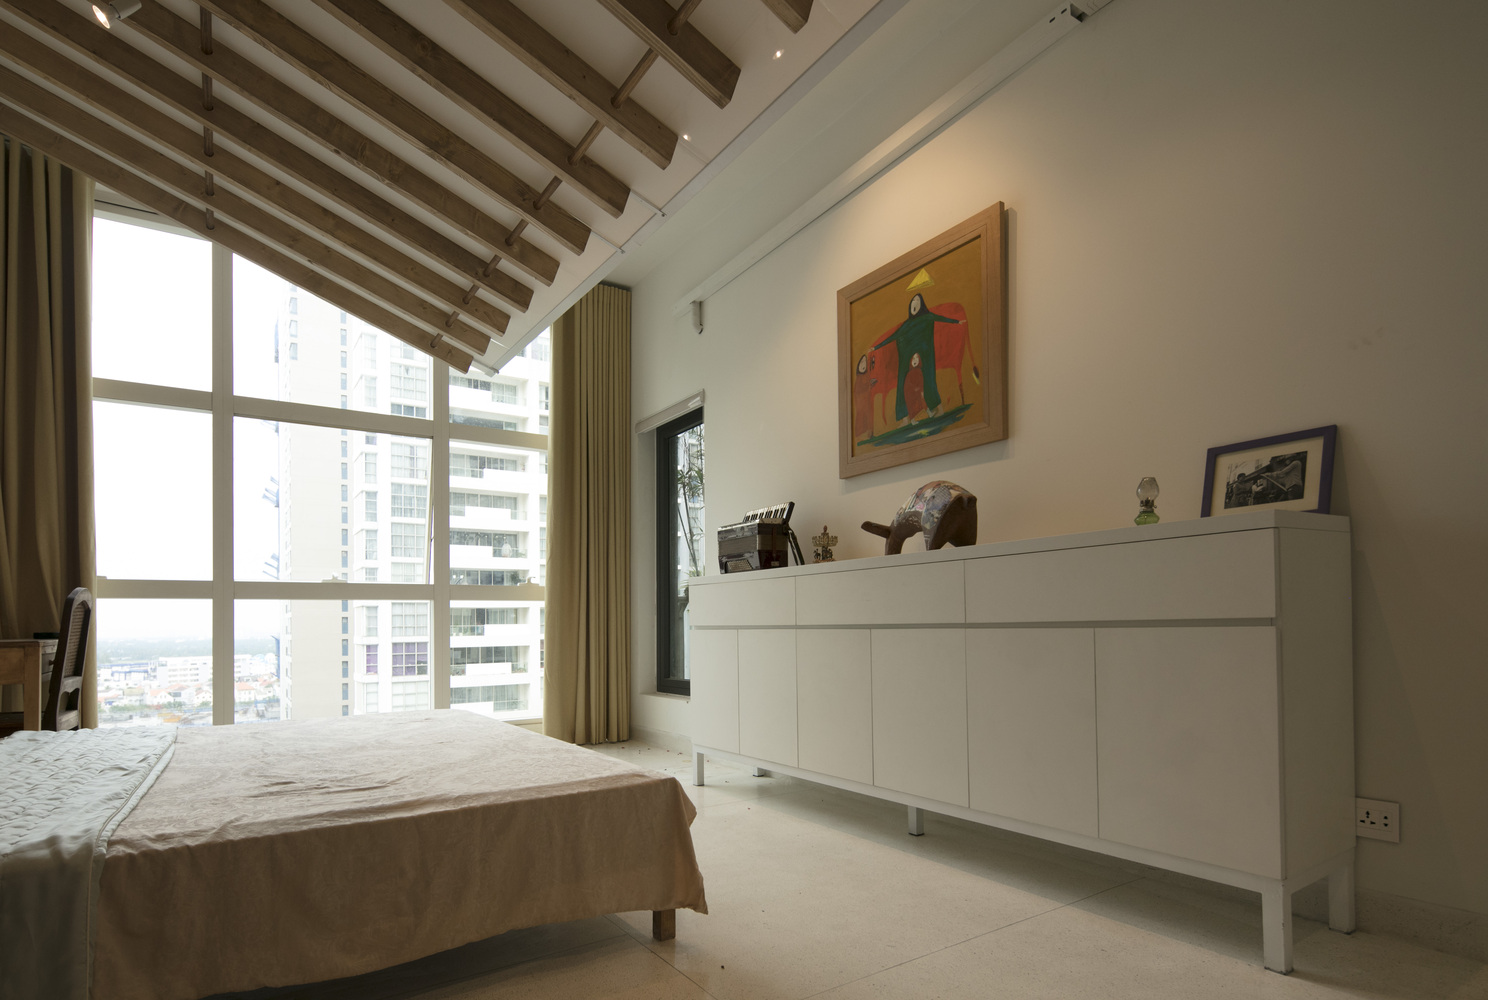 hình ảnh phòng ngủ hiện đại, thoáng sáng với tủ kệ lưu trữ màu trắng, cửa sổ kính lớn, dầm gỗ lộ thiên